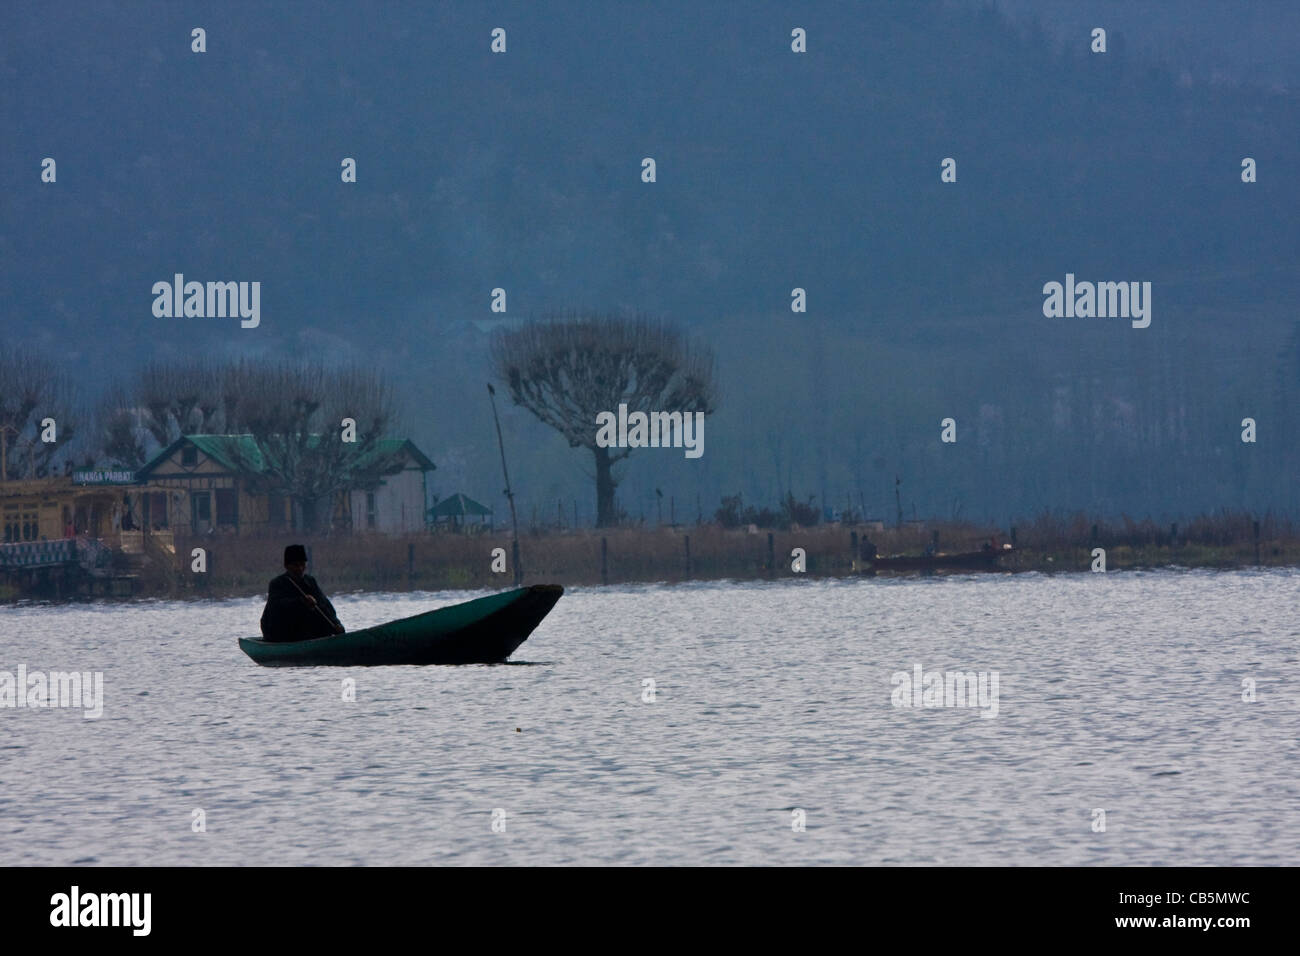 Un boatman se trouve dans le lac Dal de Srinagar, au Cachemire, en Inde, avec de l'eau calme et un paysage frais. Banque D'Images